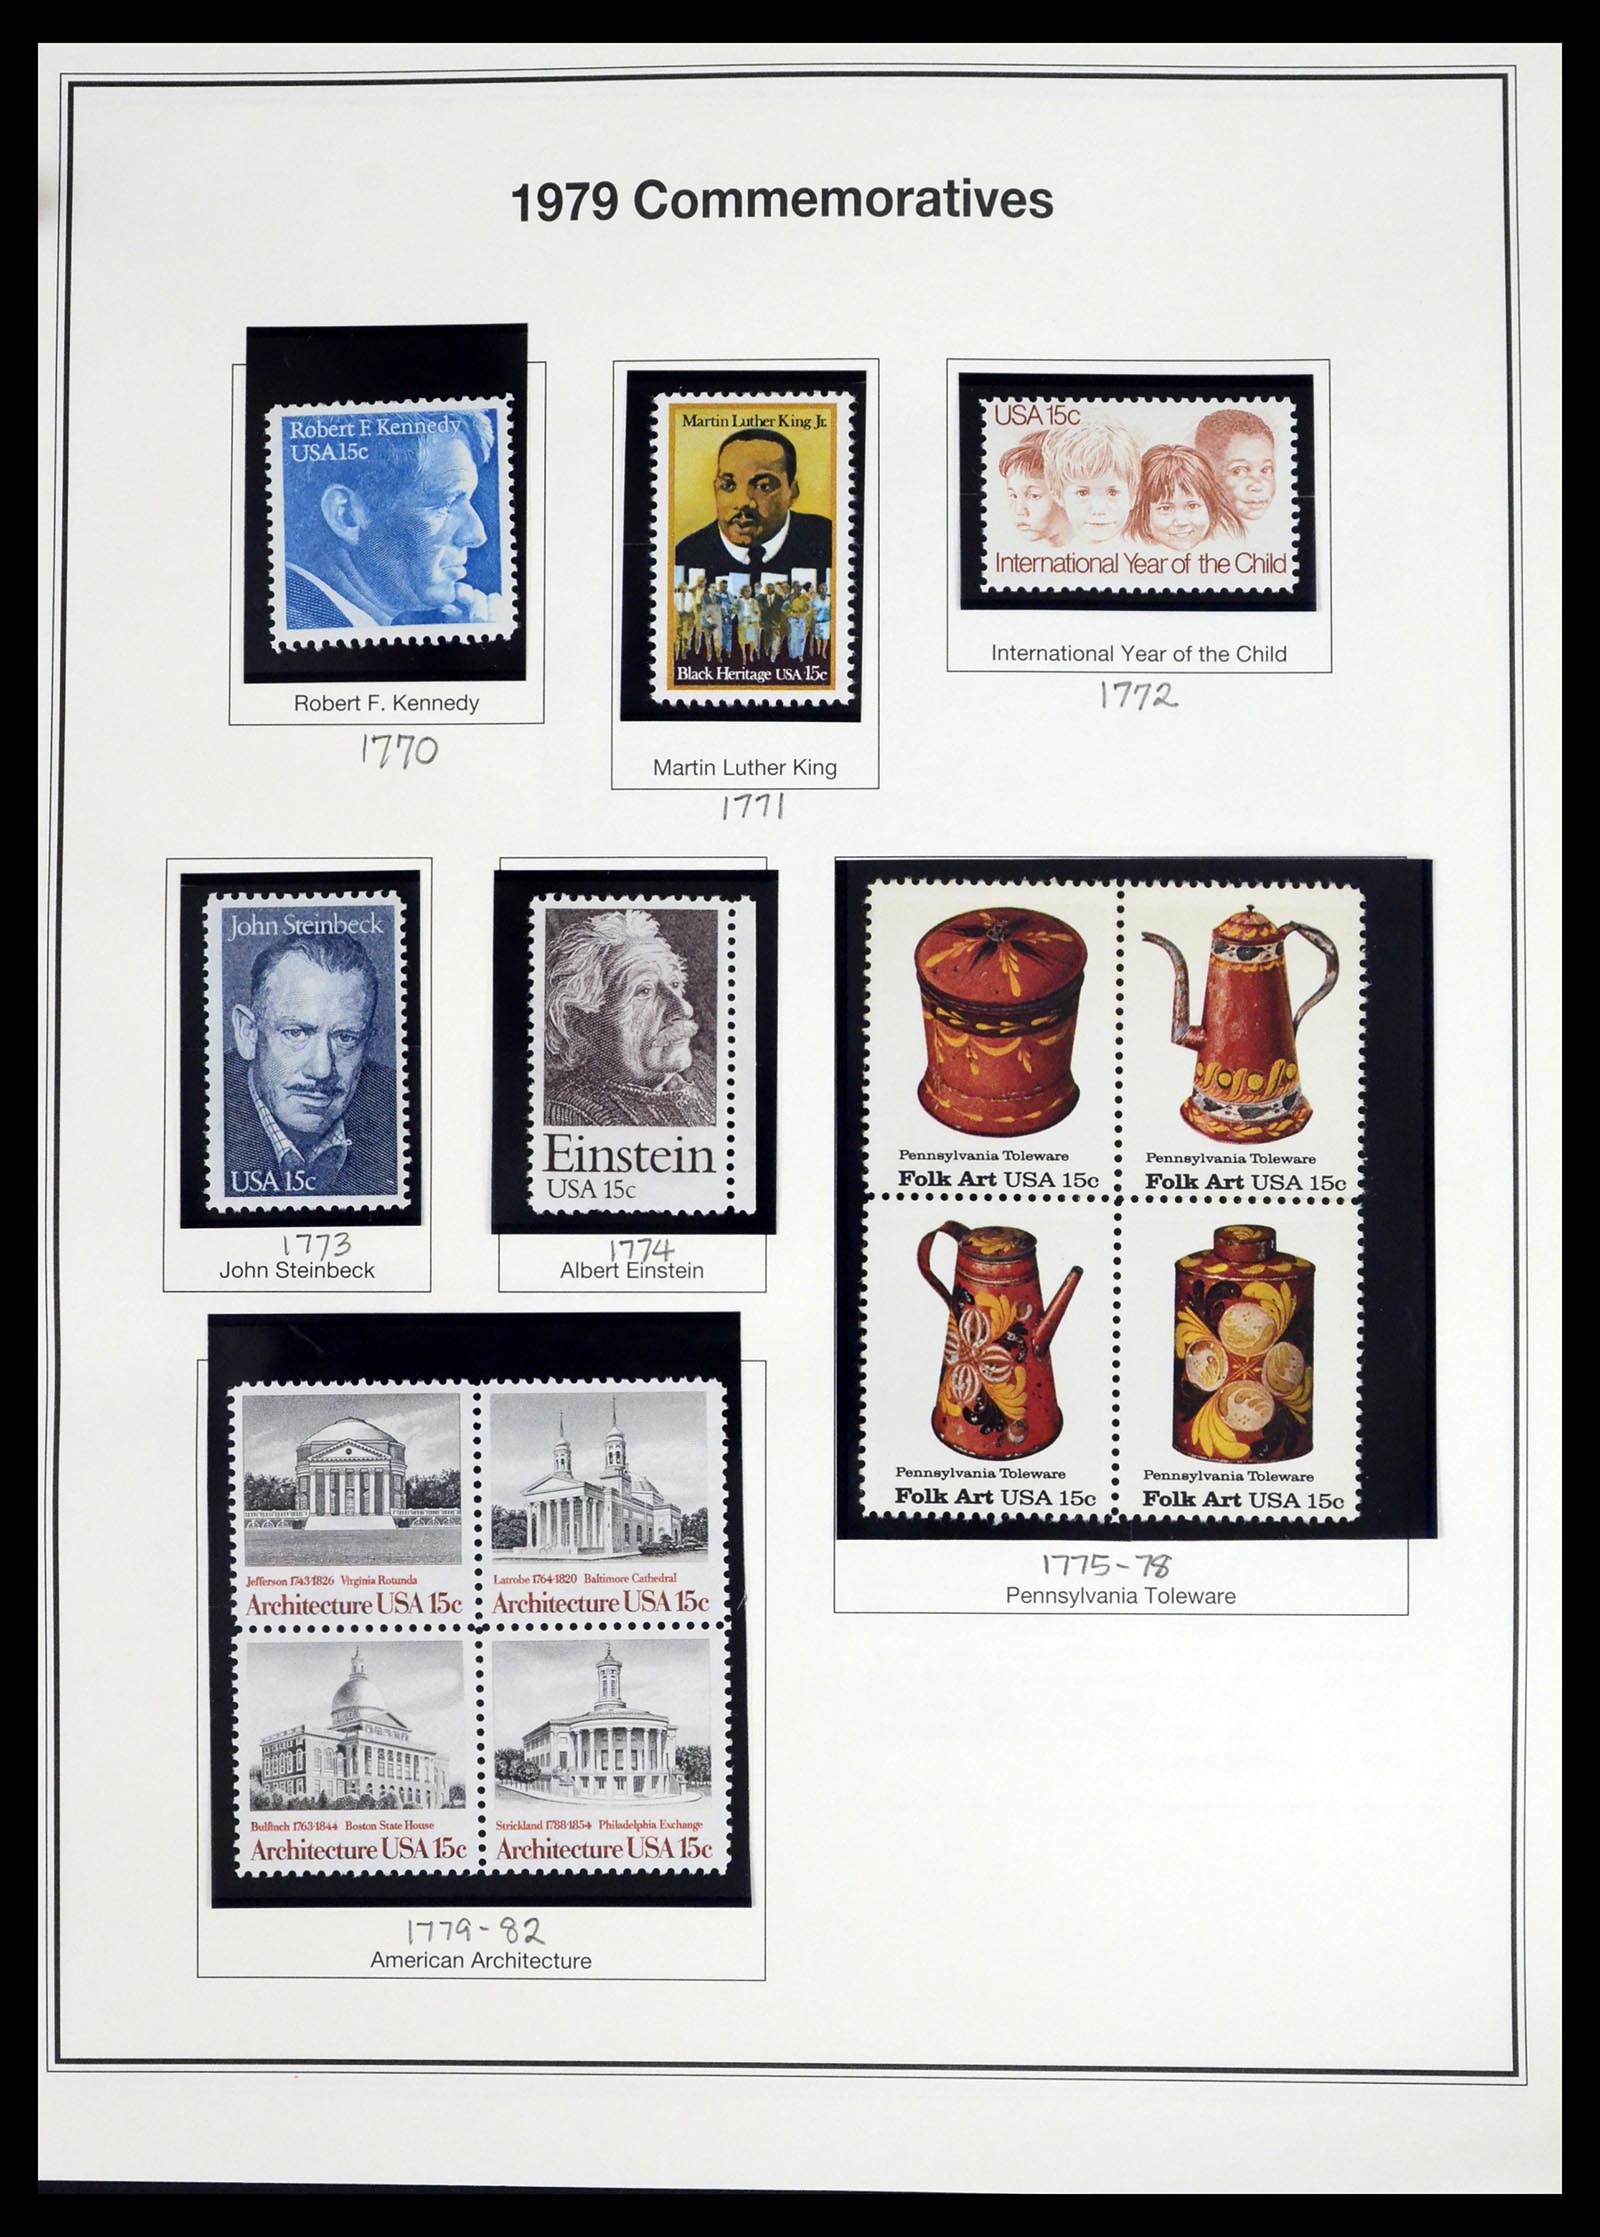 37193 048 - Stamp collection 37193 USA 1970-2020!